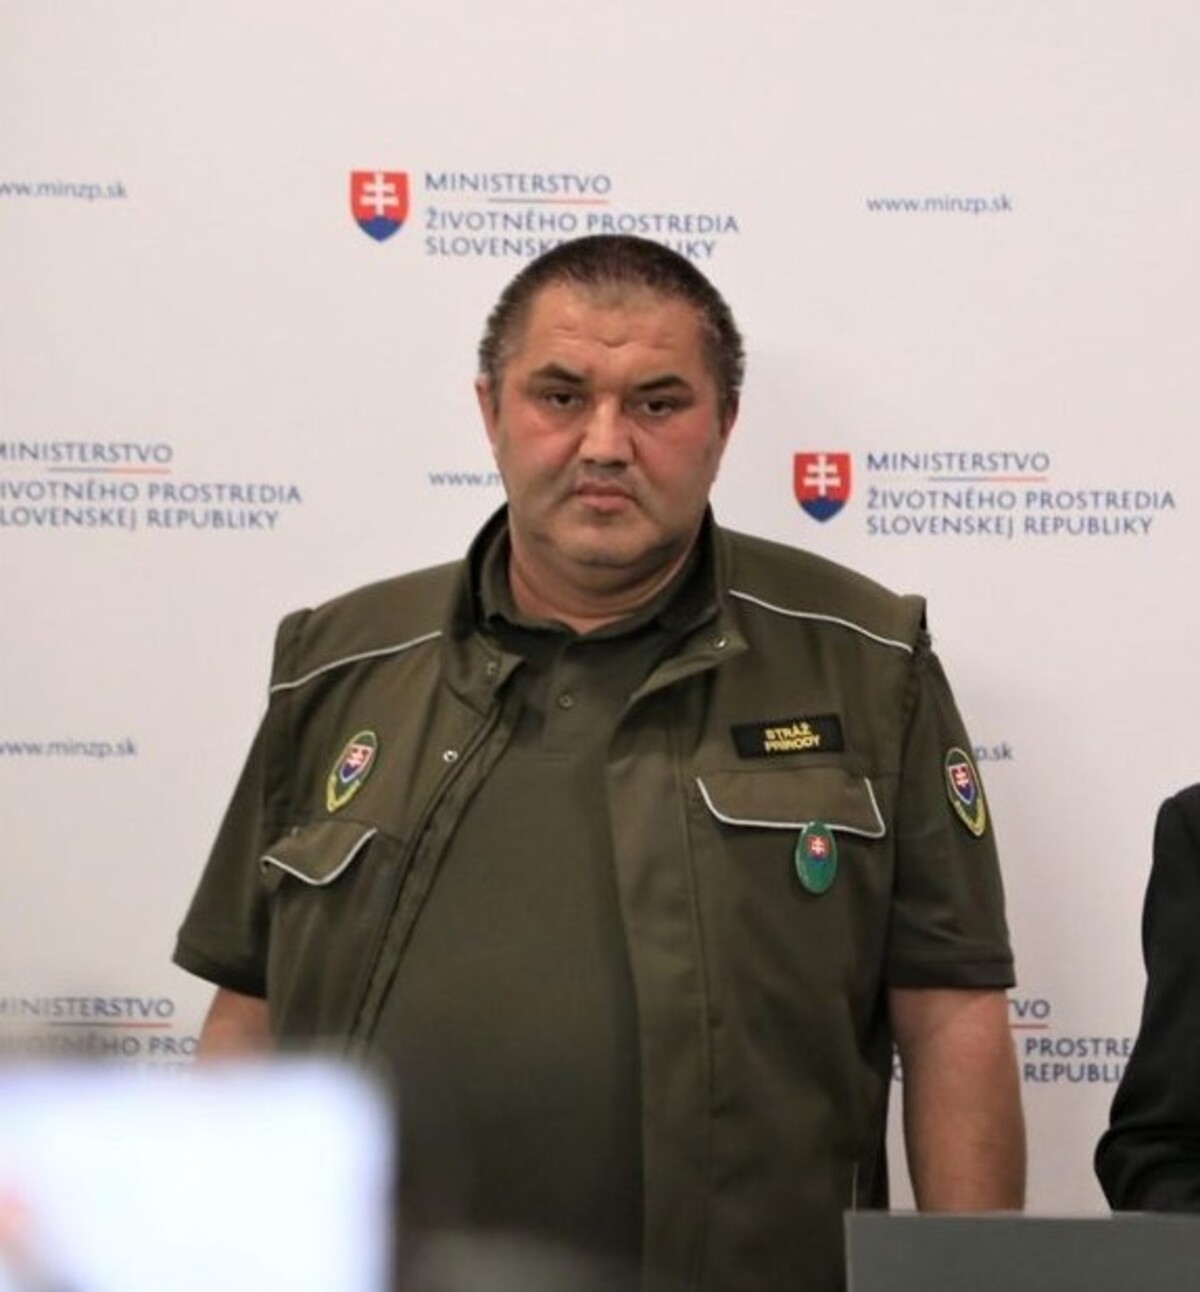 Kandidát SaS Miroslav Martinka sa v sobotu 26. augusta pobil počas verejného podujatia v obci Mojtín. Tvrdí, že sa iba bránil pred útočníkmi.